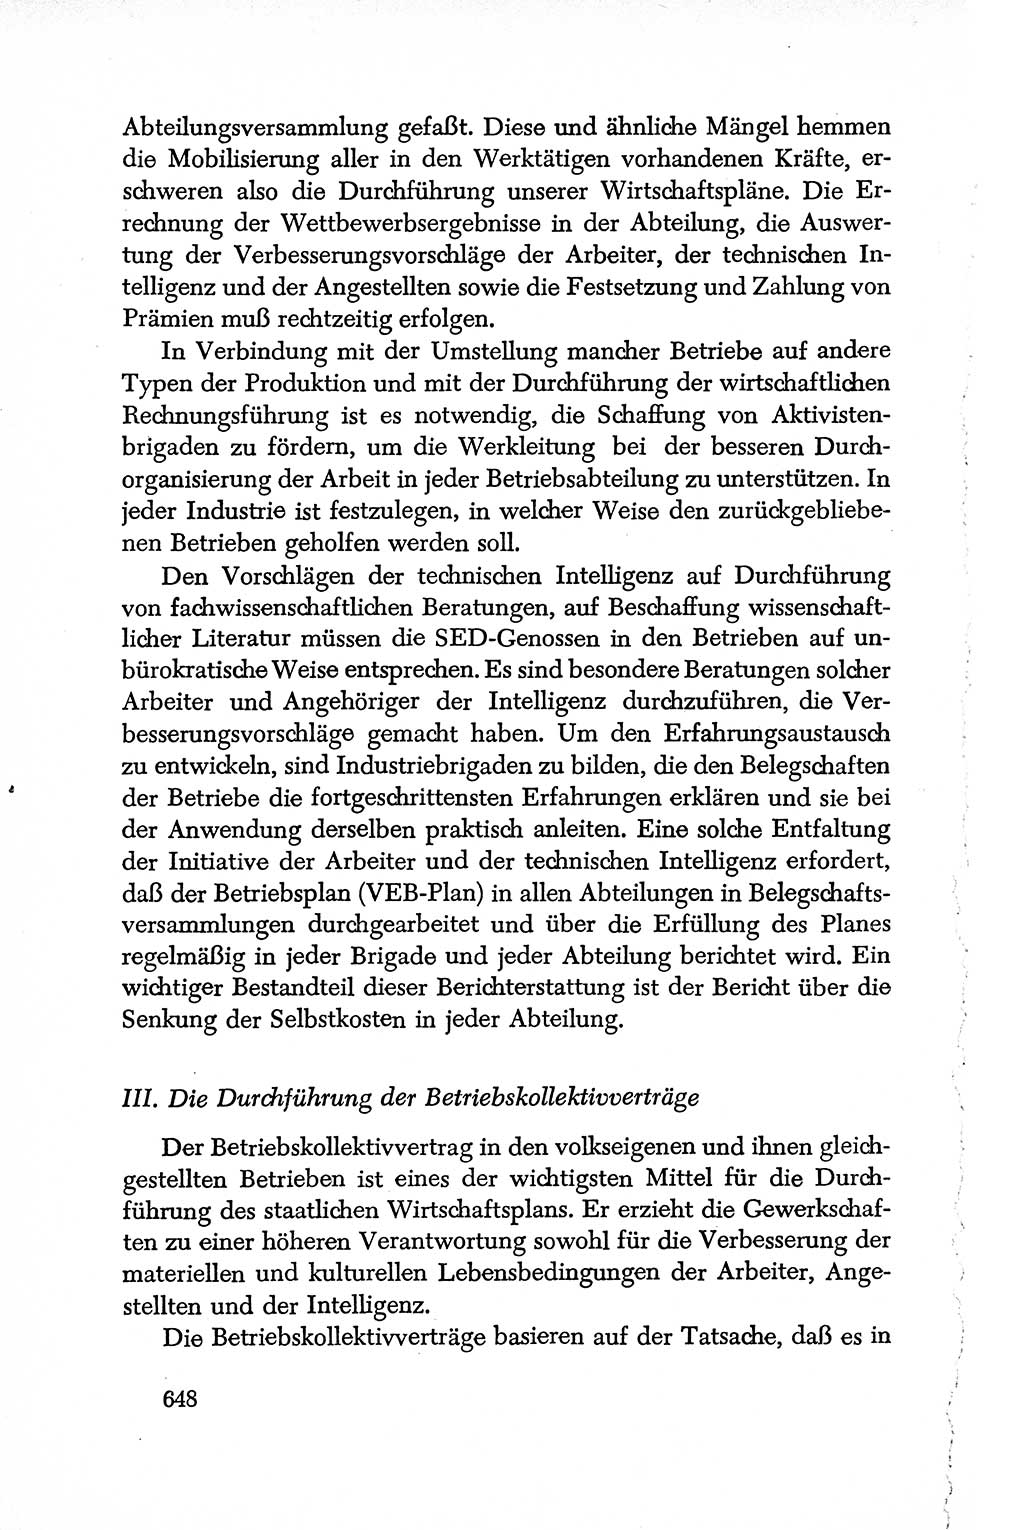 Dokumente der Sozialistischen Einheitspartei Deutschlands (SED) [Deutsche Demokratische Republik (DDR)] 1950-1952, Seite 648 (Dok. SED DDR 1950-1952, S. 648)